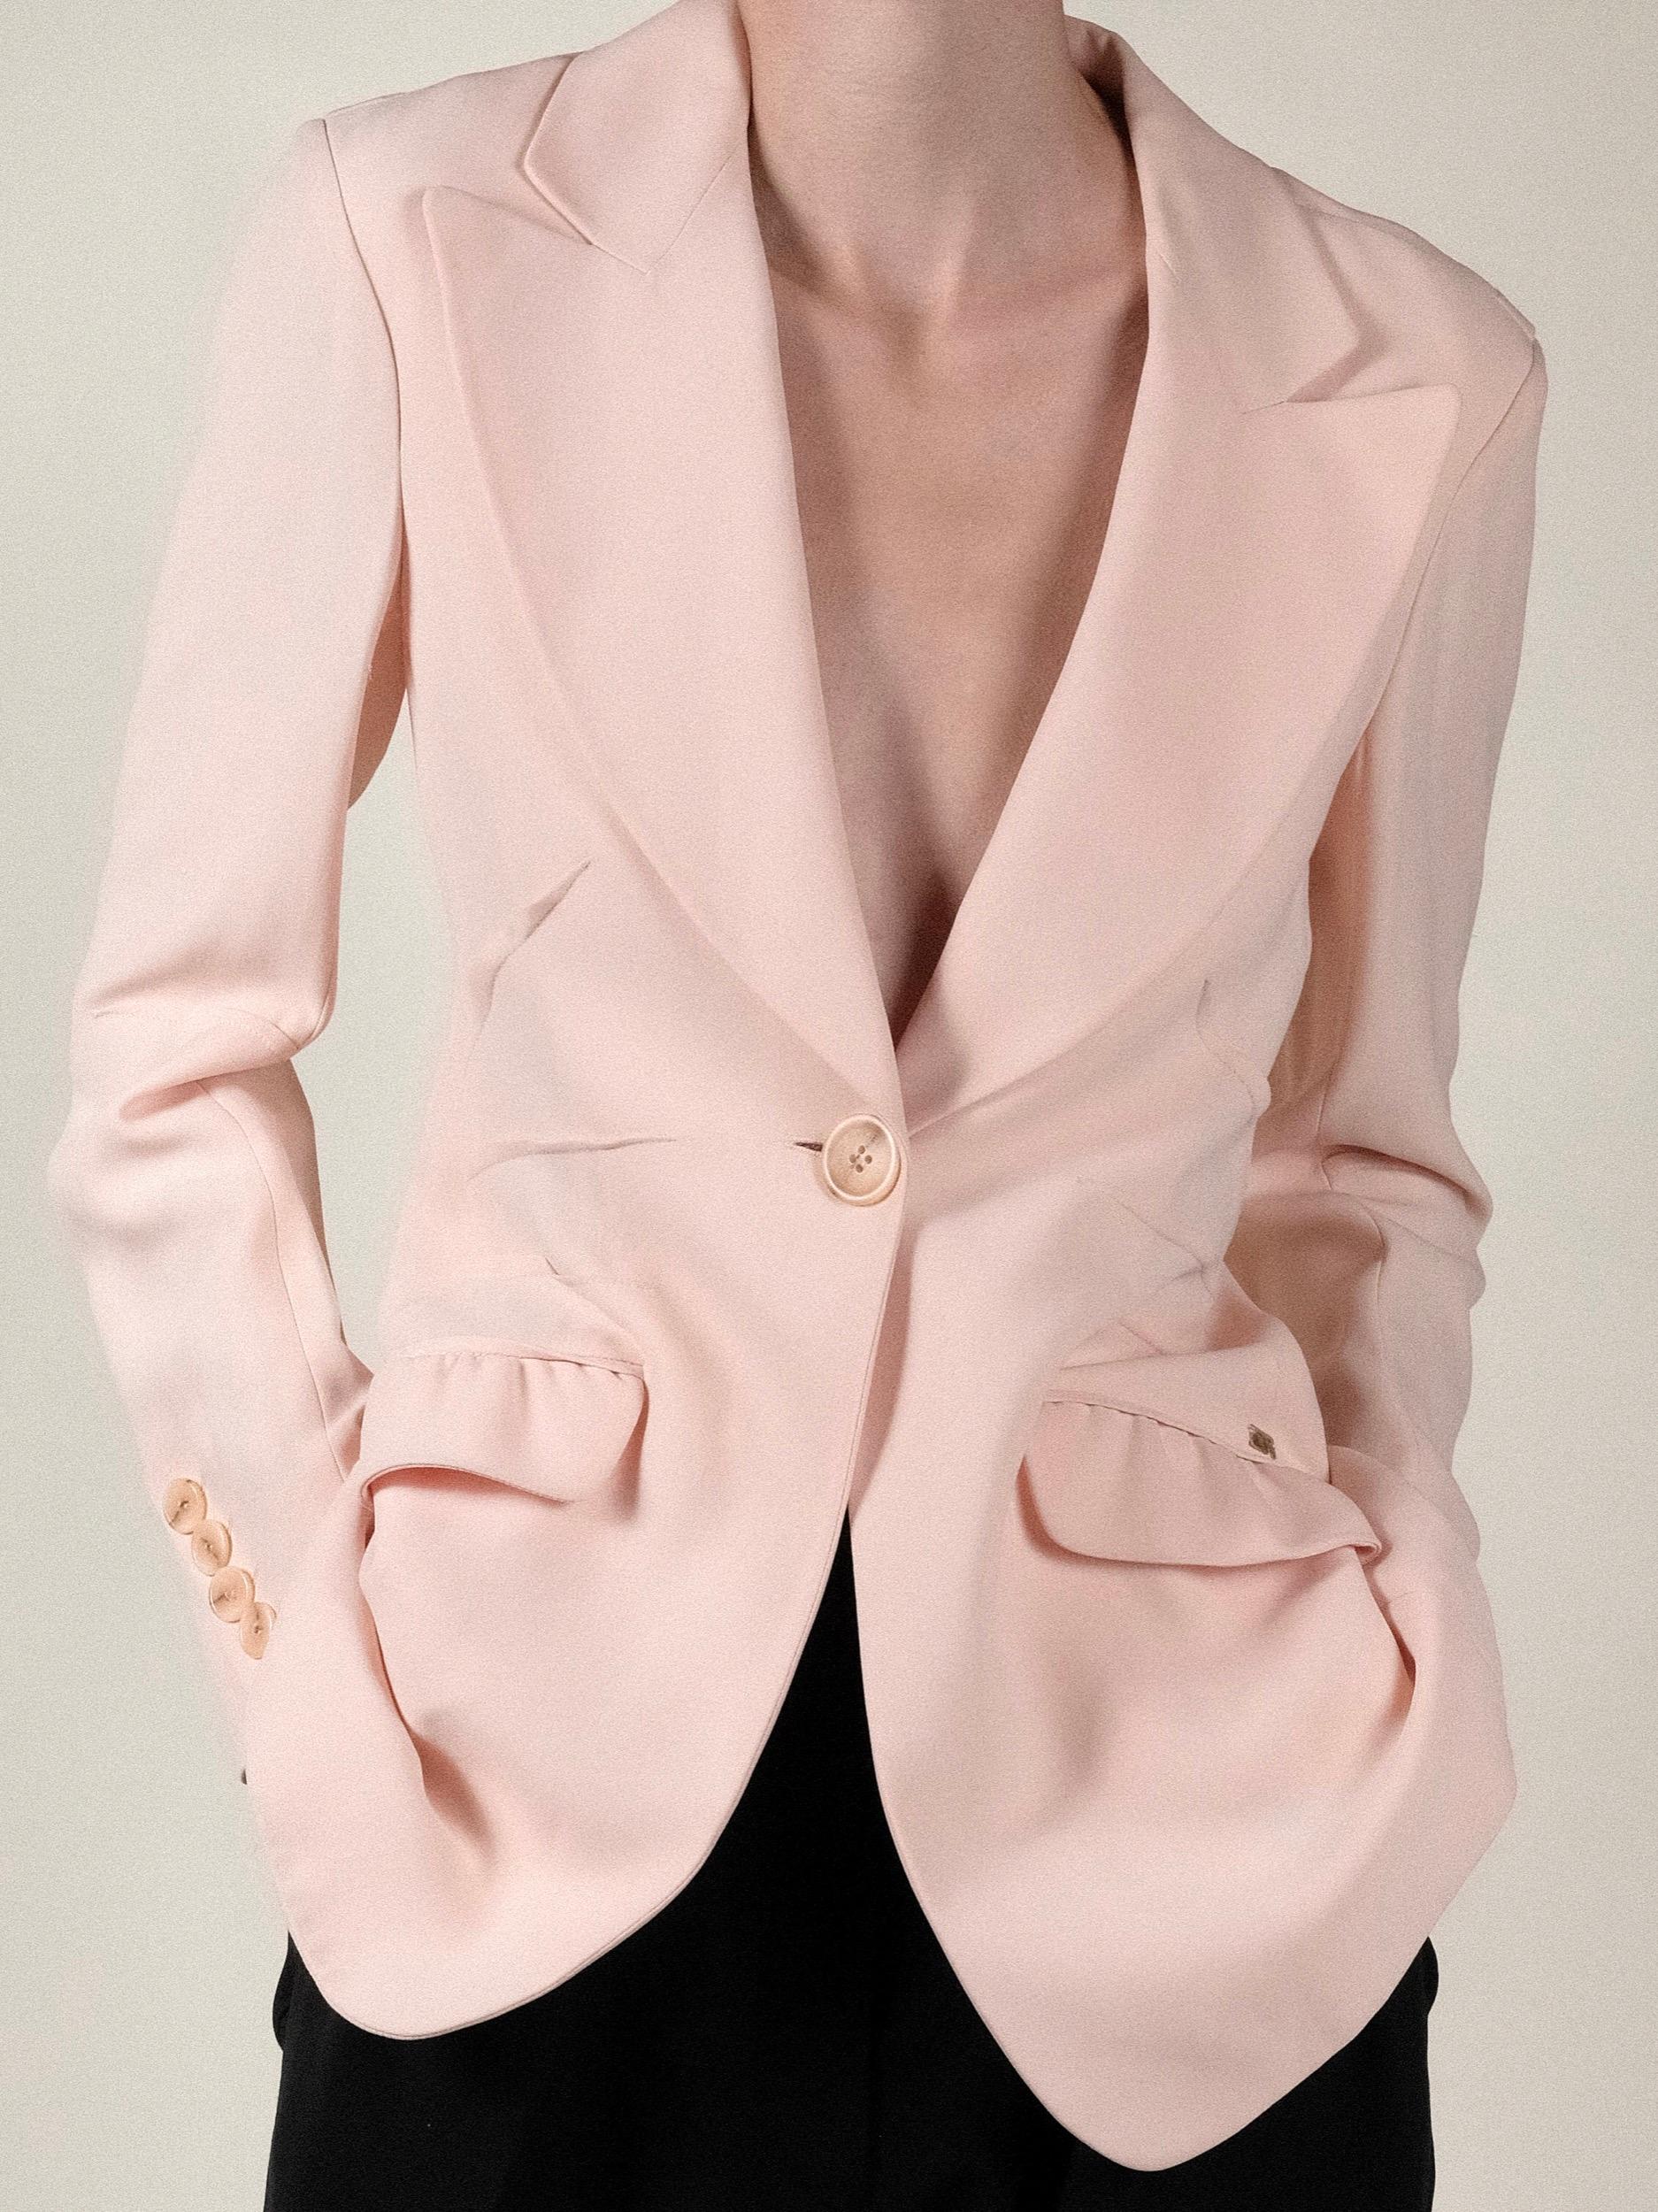 Women's Sonia Rykiel Jacket Pink 1990's 2000's Ruffle  For Sale